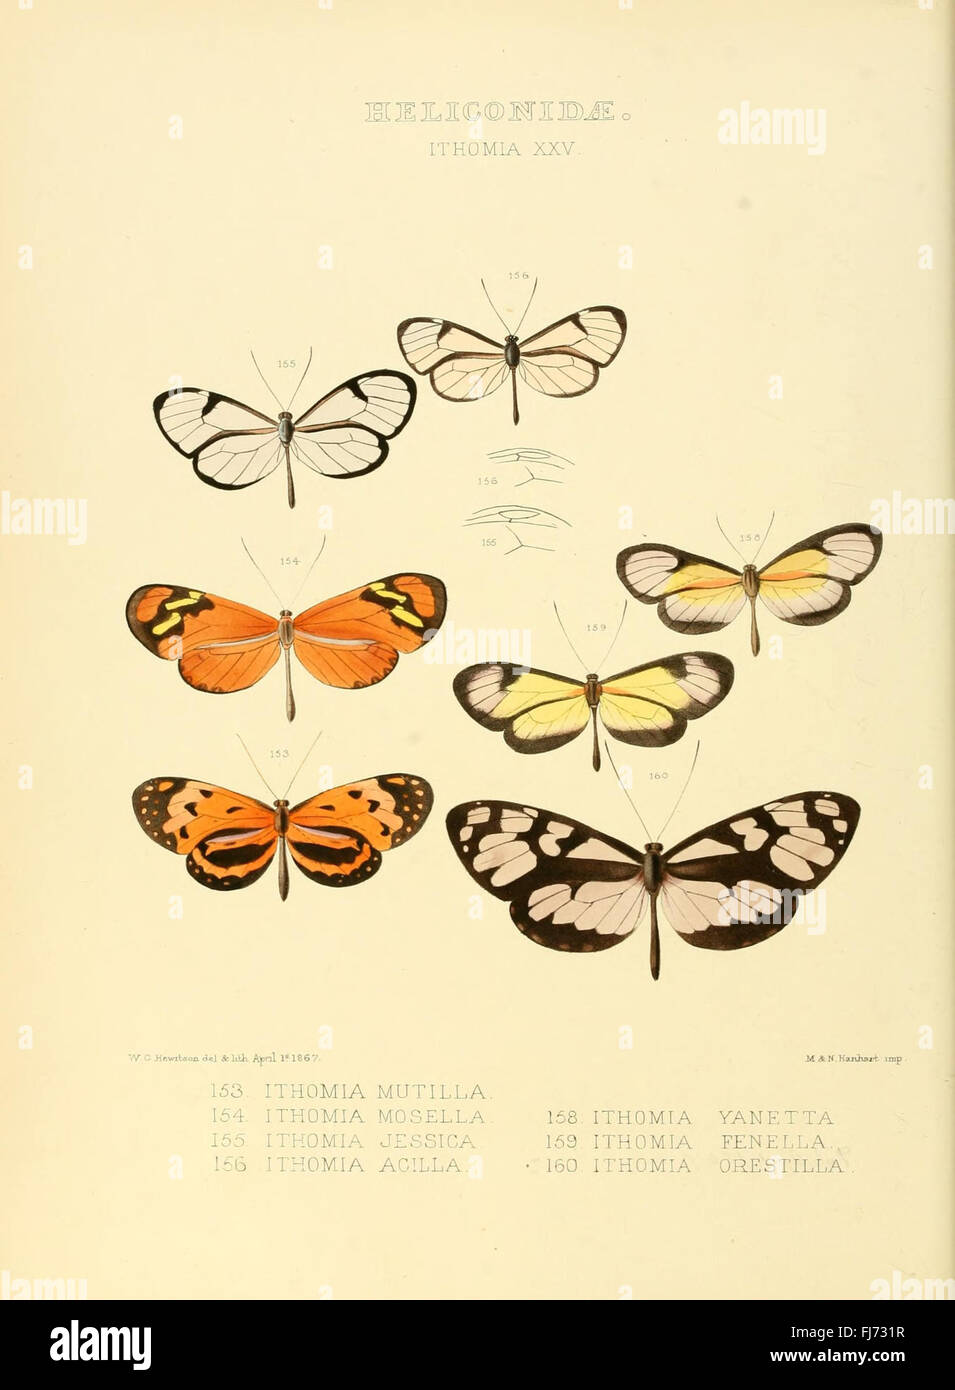 Illustrazioni di nuove specie di farfalle esotiche (Heliconidae- Ithomia XXV) Foto Stock